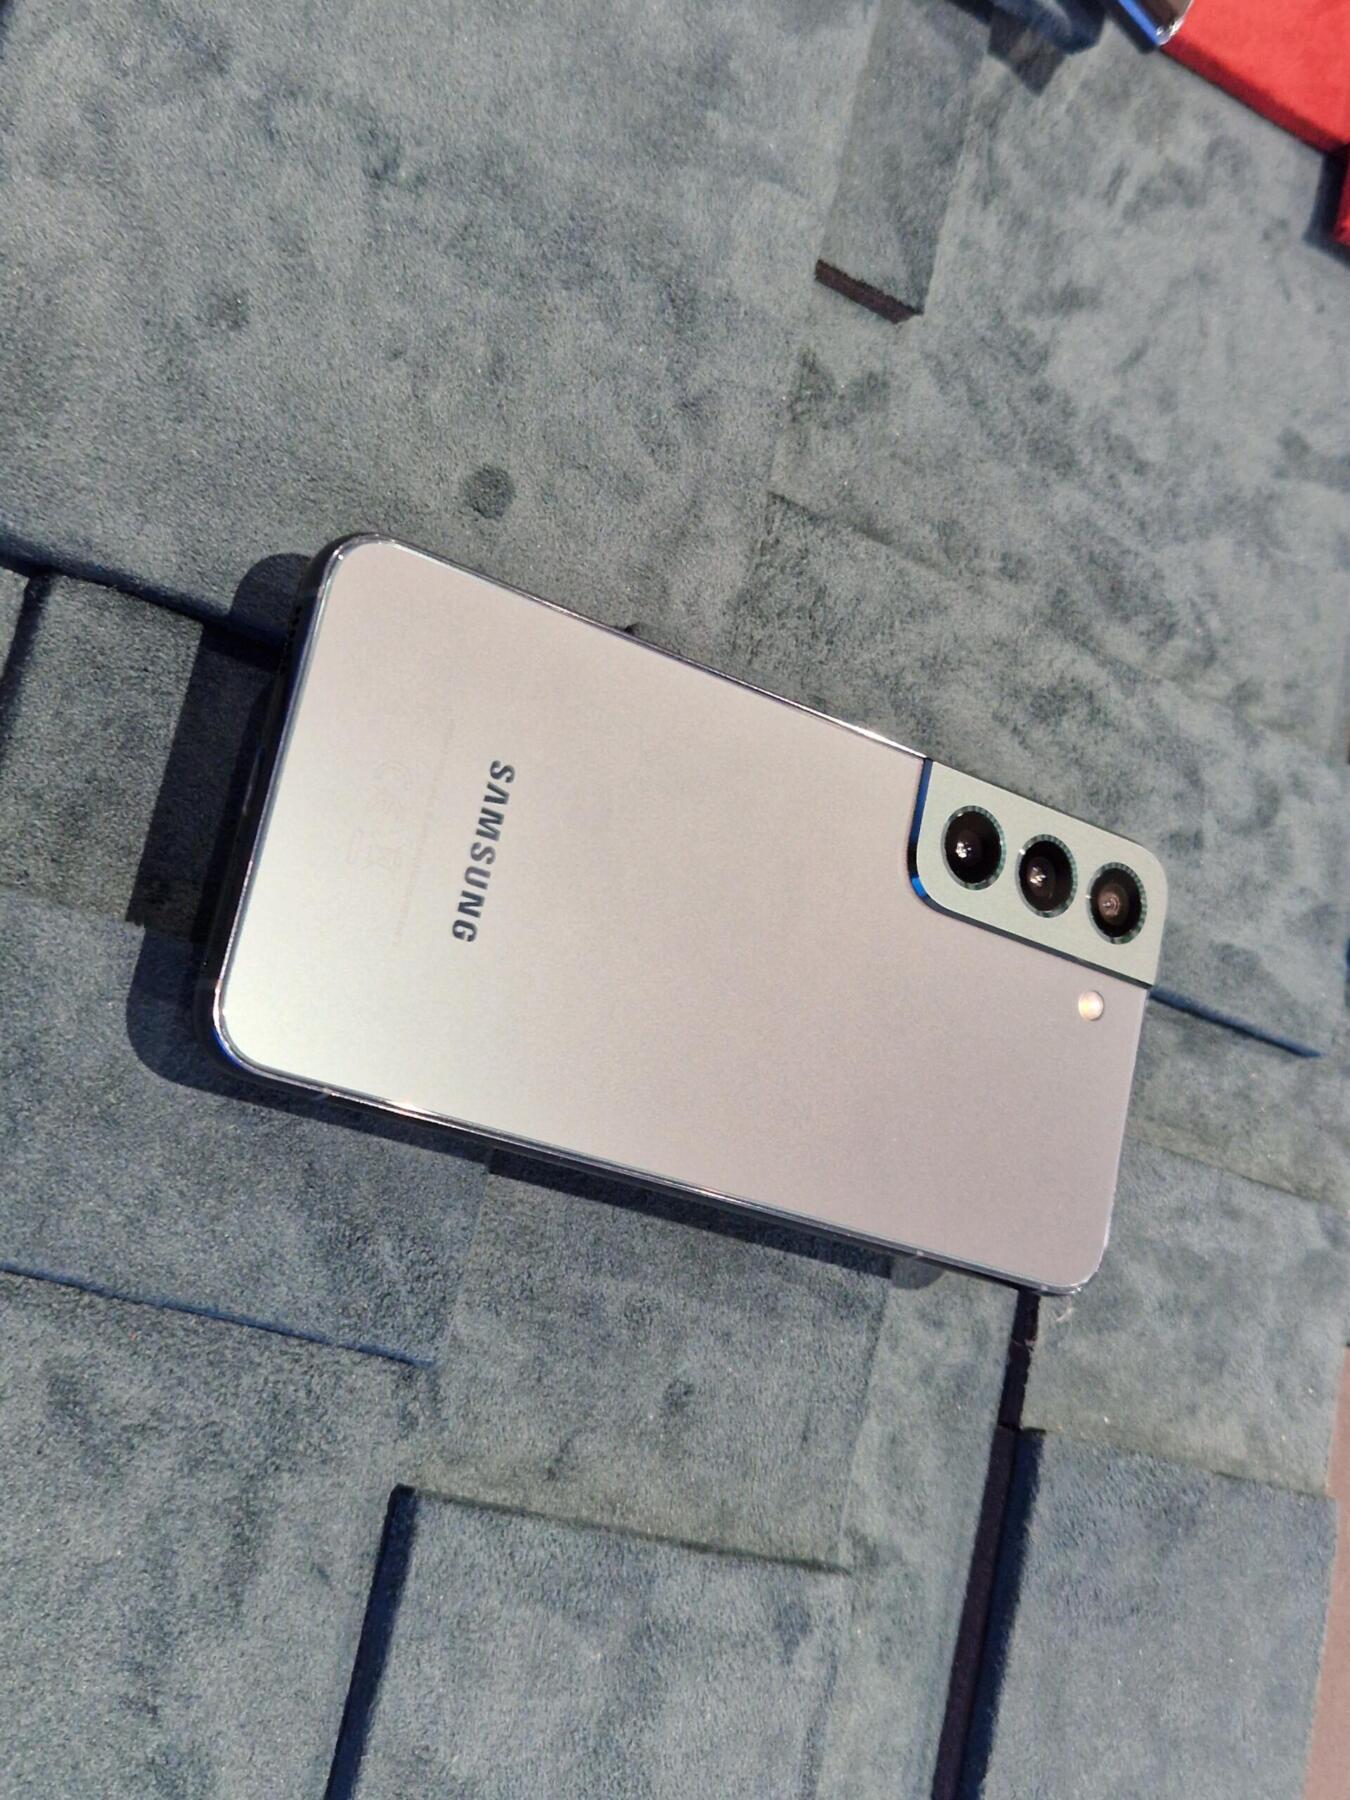 Samsung Galaxy S22 и S22+: предварительный обзор (20220211 021058 scaled)